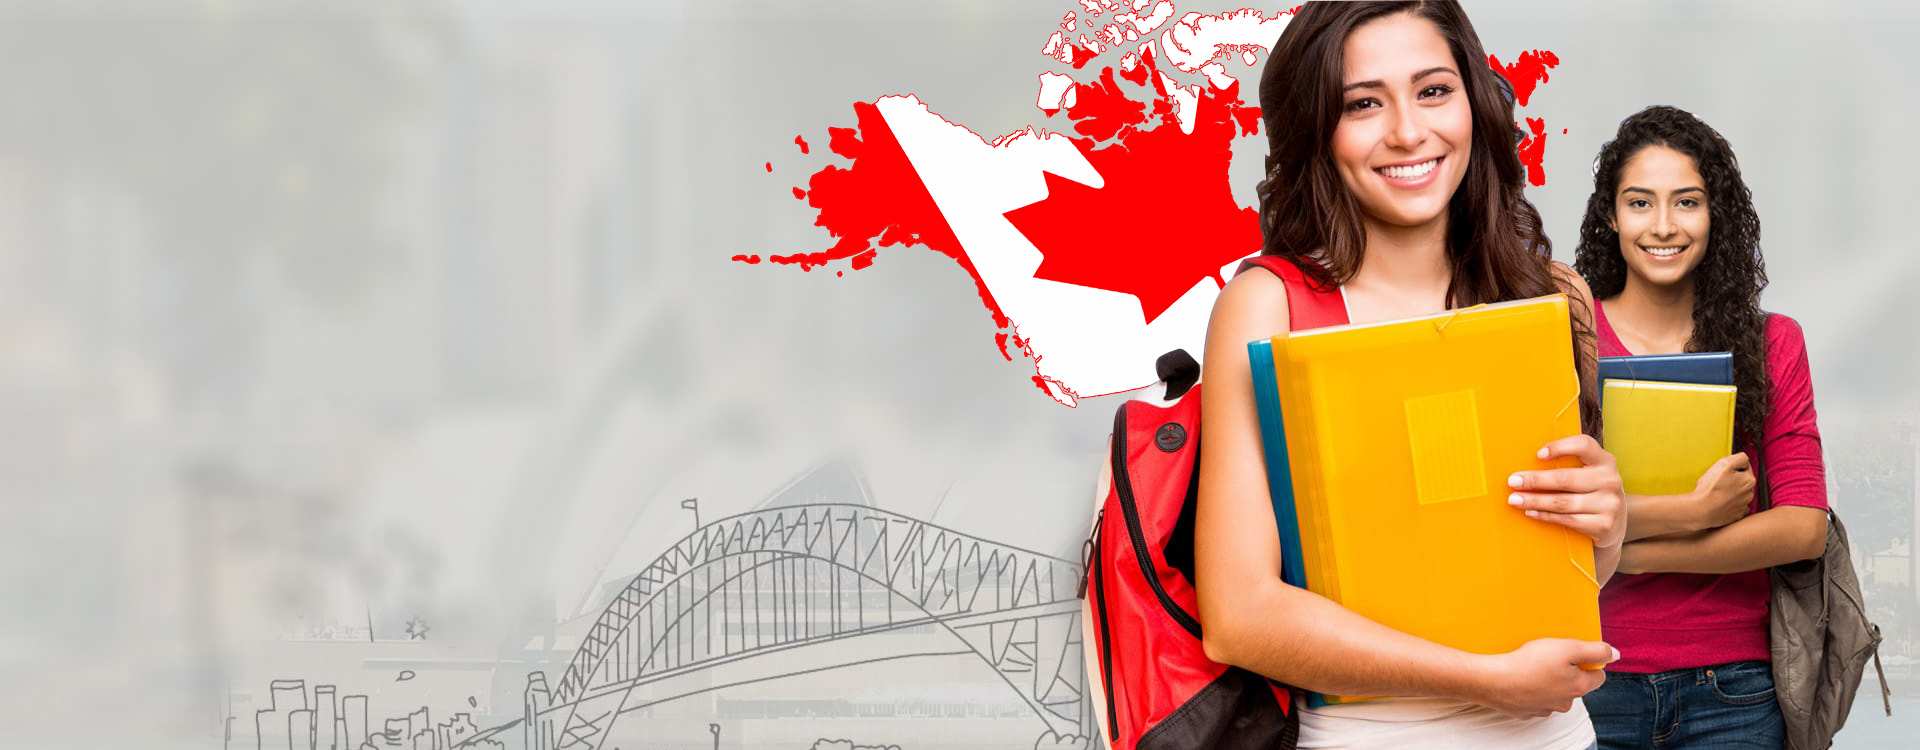 Visas immigration. Студенты в Канаде. Студент с визой Канада. Девушка с визой. Мигранты в Канаде.